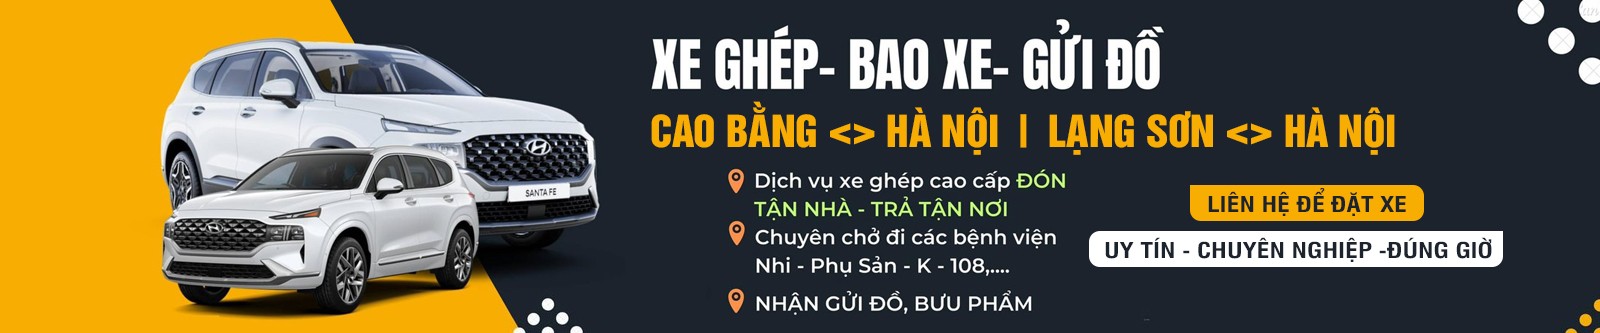 Xe ghép 000 Cao Bằng , Lạng Sơn - Hà Nội